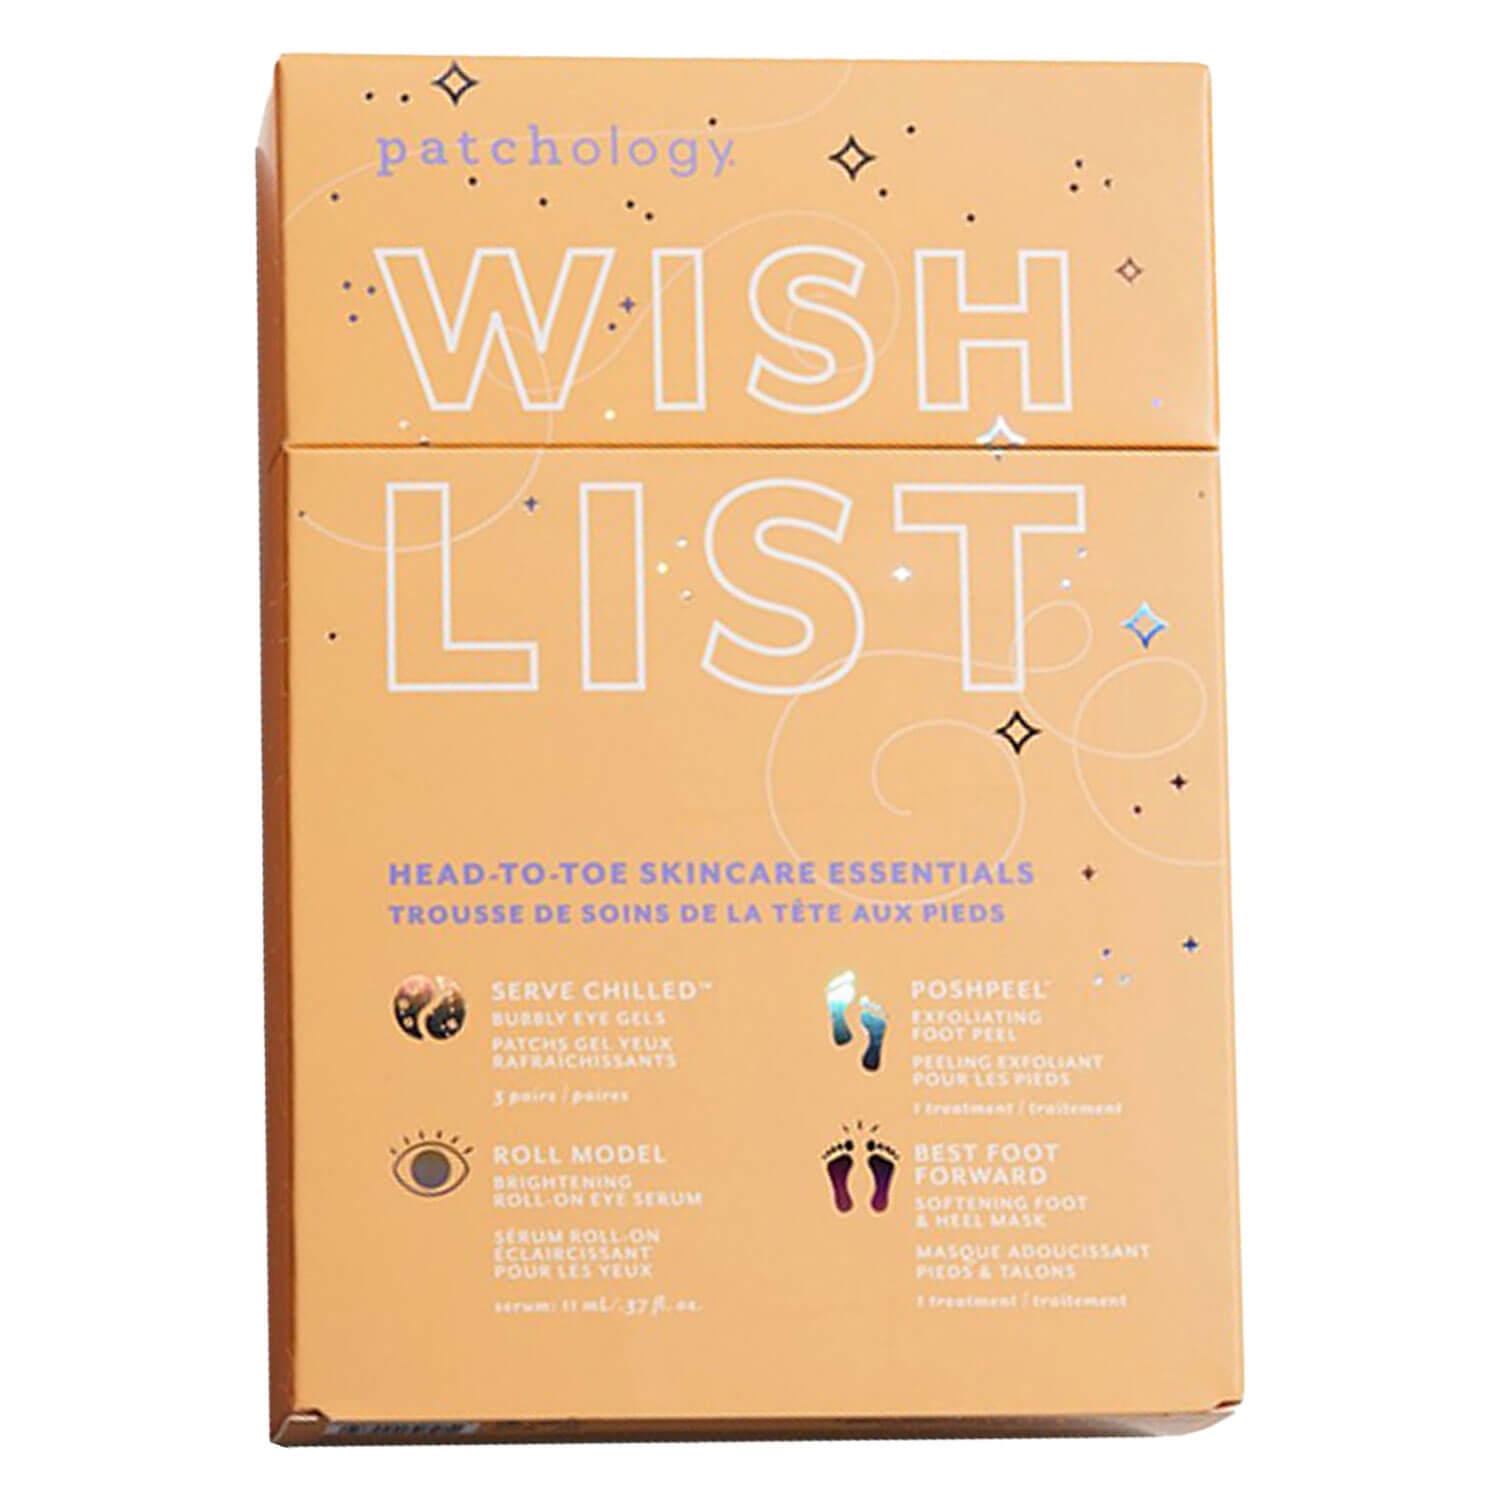 Produktbild von patchology Kits - Wish List